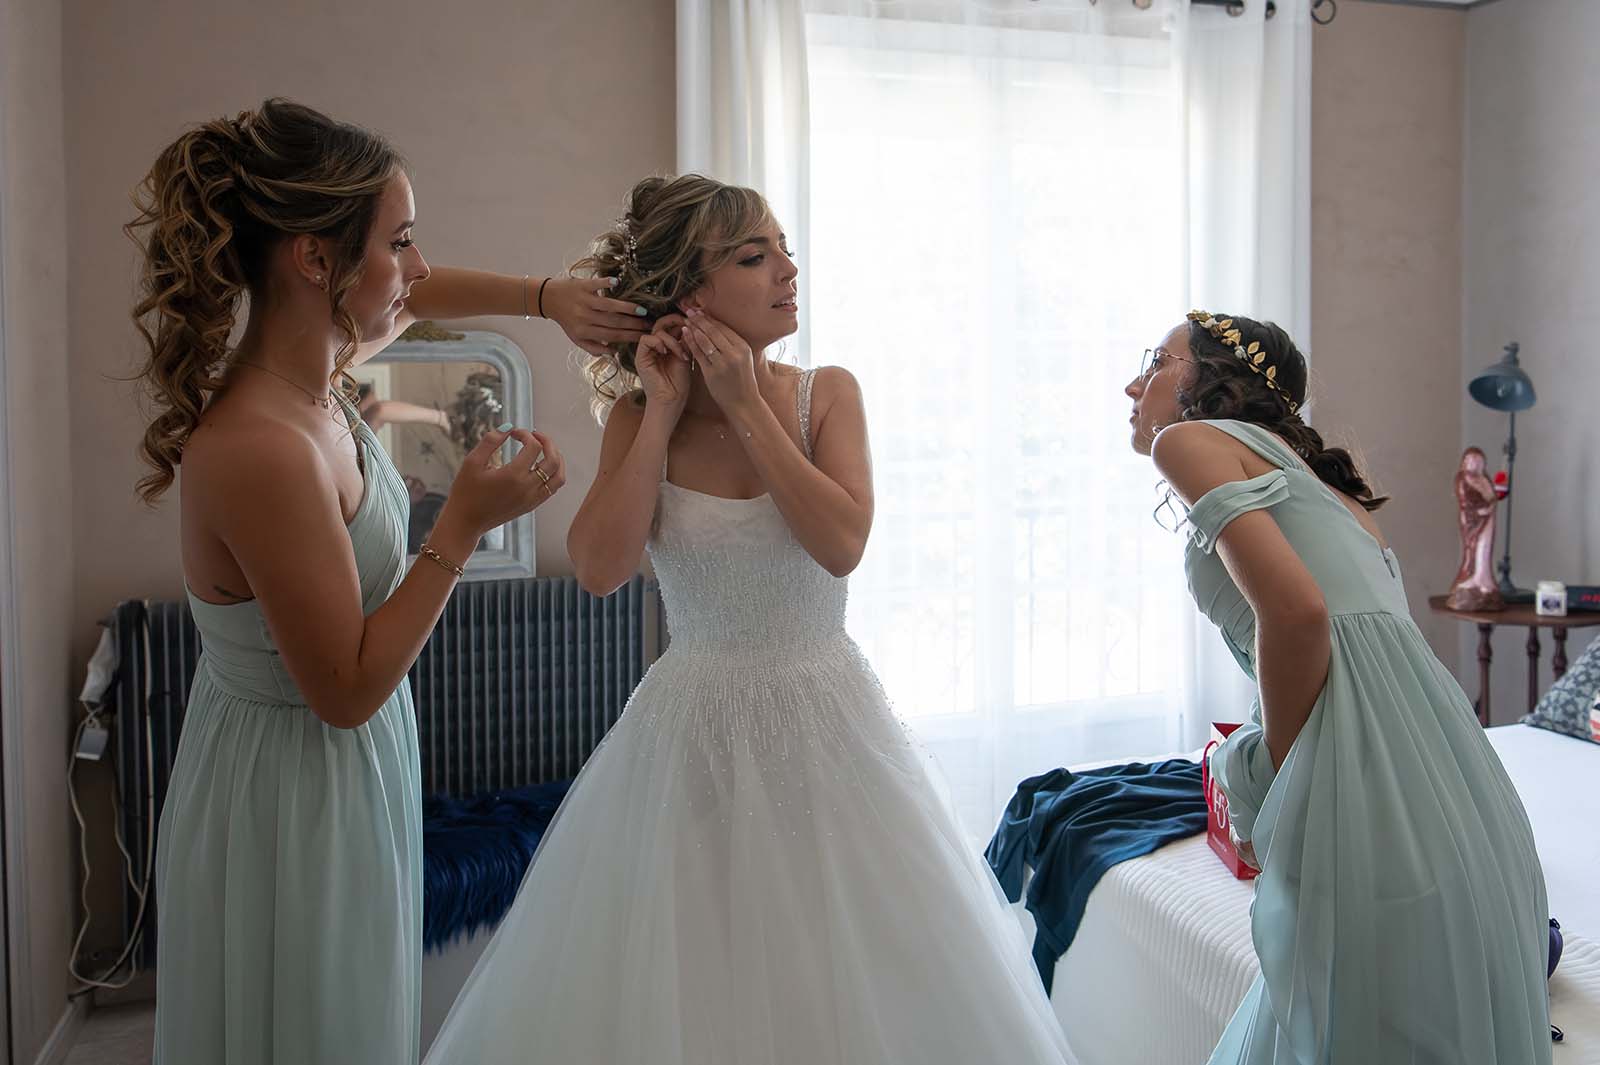 deux jeunes filles et une mariée dans une chambre. La mariée enfile une boucle d'oreille